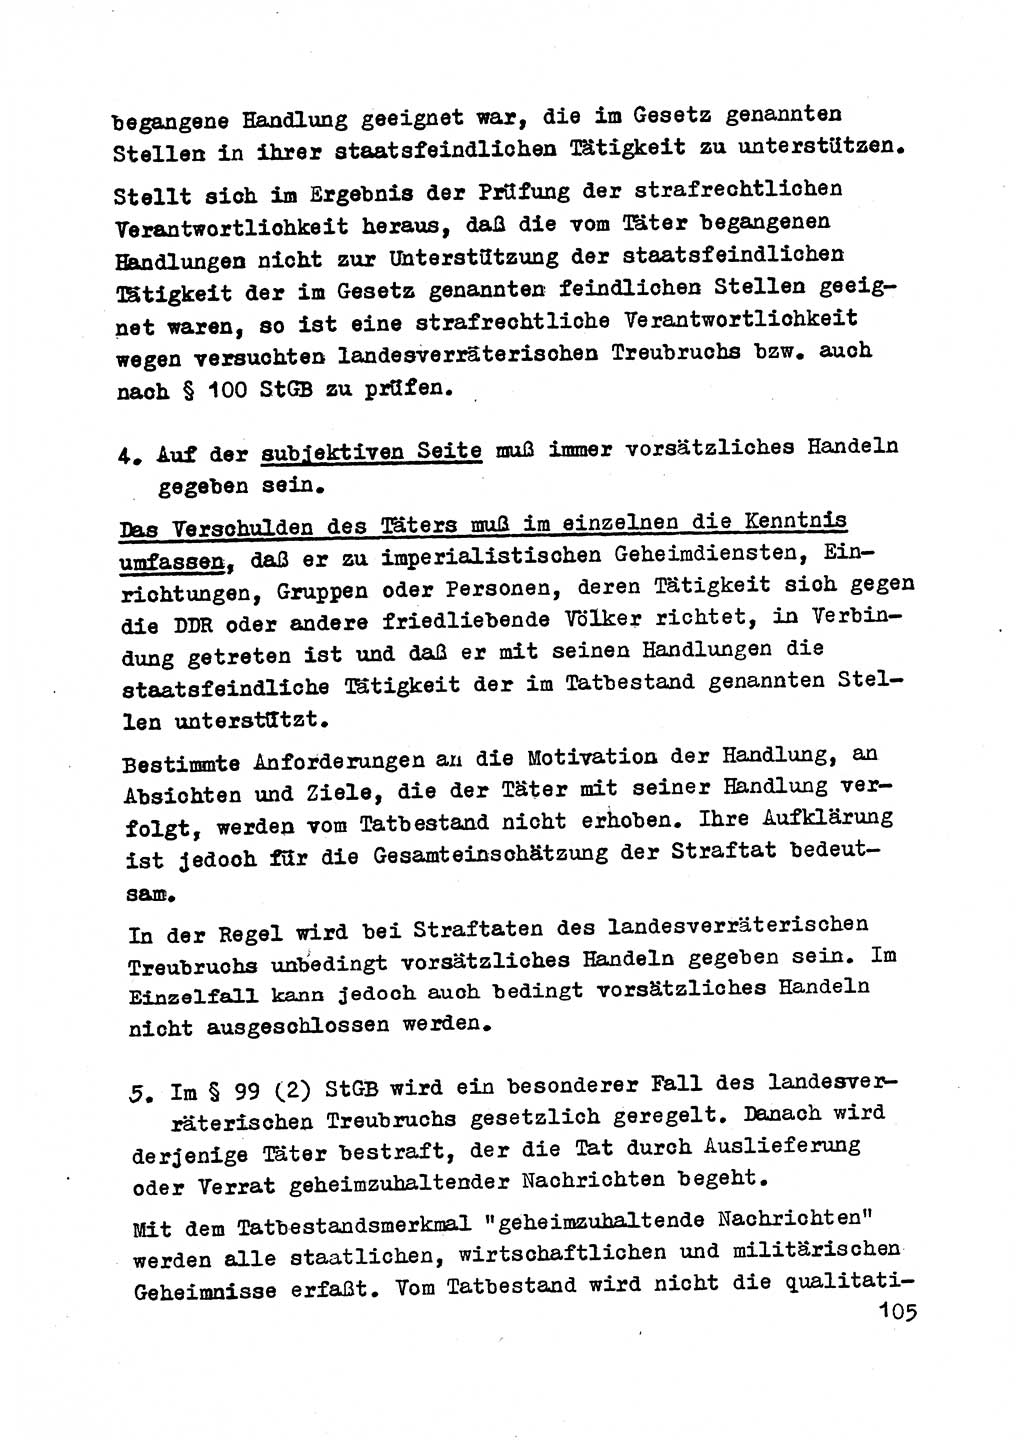 Strafrecht der DDR (Deutsche Demokratische Republik), Besonderer Teil, Lehrmaterial, Heft 2 1969, Seite 105 (Strafr. DDR BT Lehrmat. H. 2 1969, S. 105)